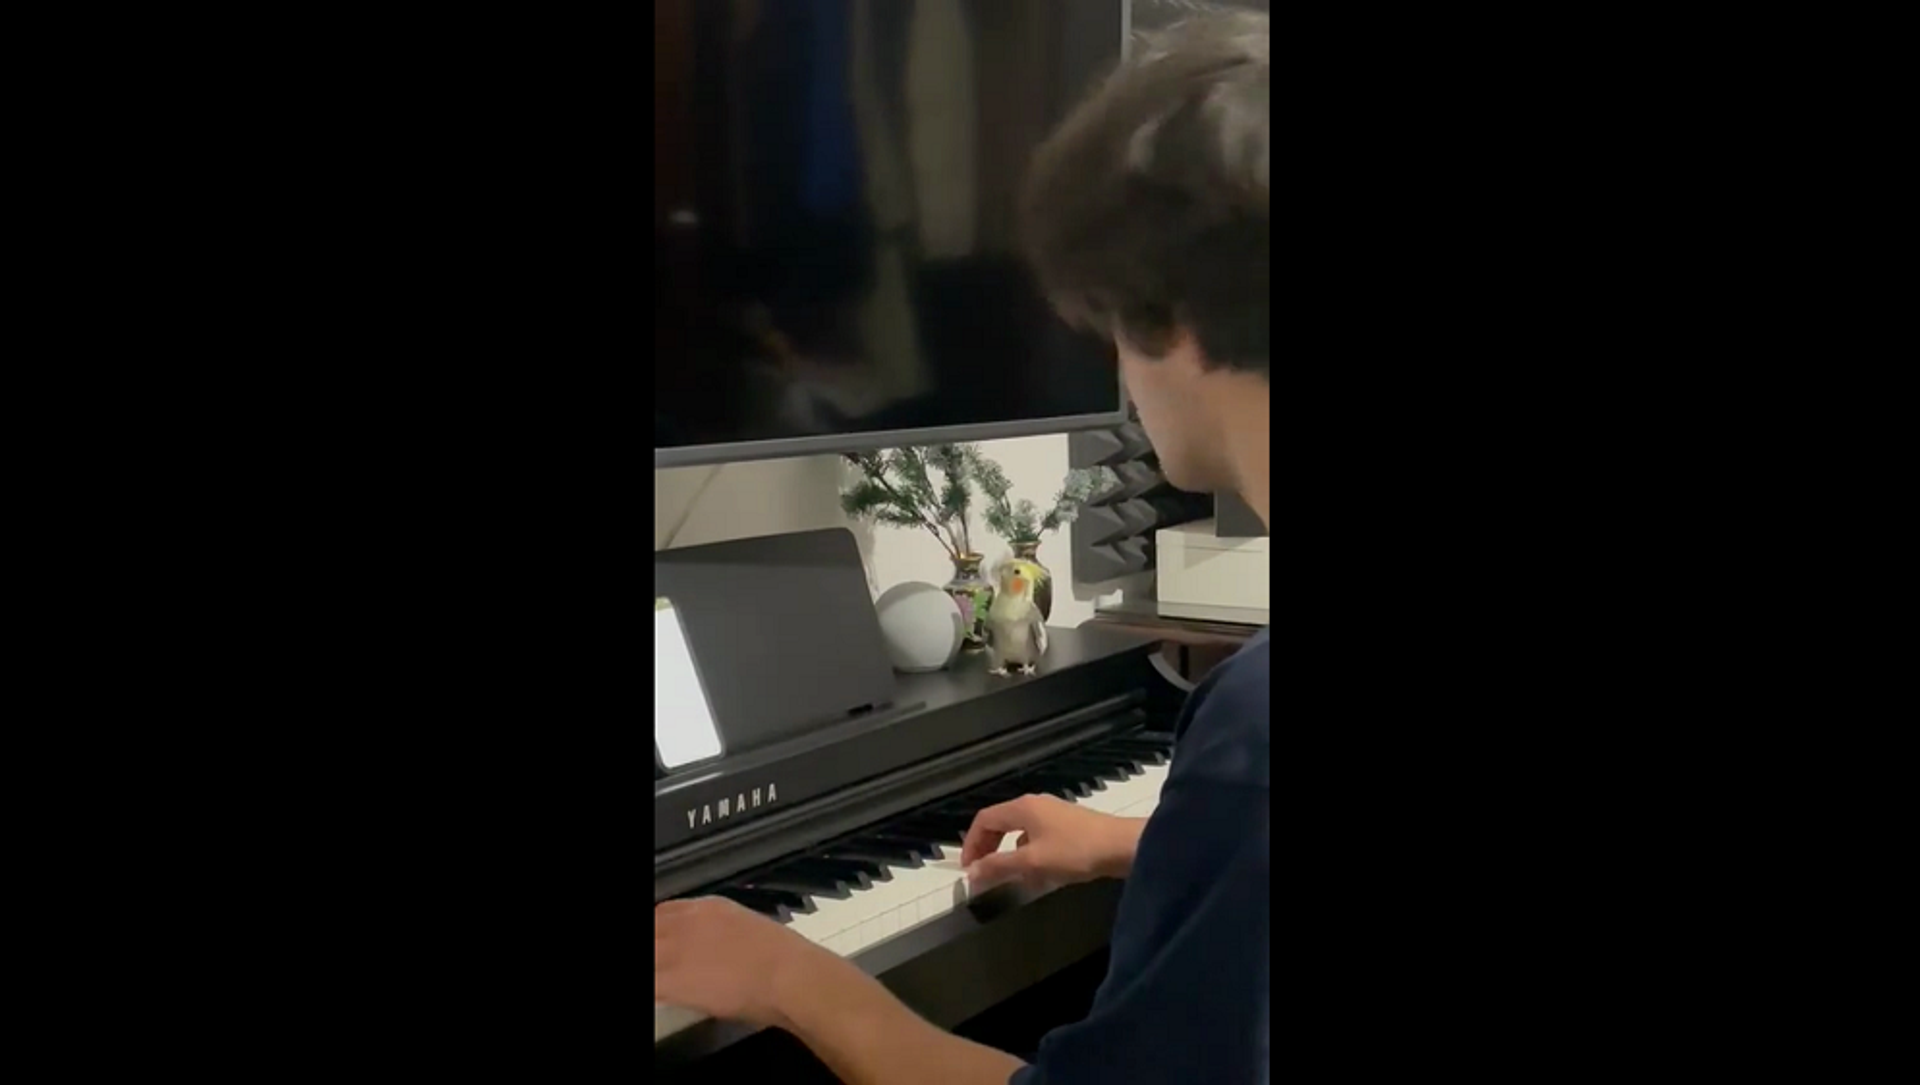 Дуэт играющего на пианино парня с поющим попугаем покорил Сеть – видео - Sputnik Грузия, 1920, 17.08.2021